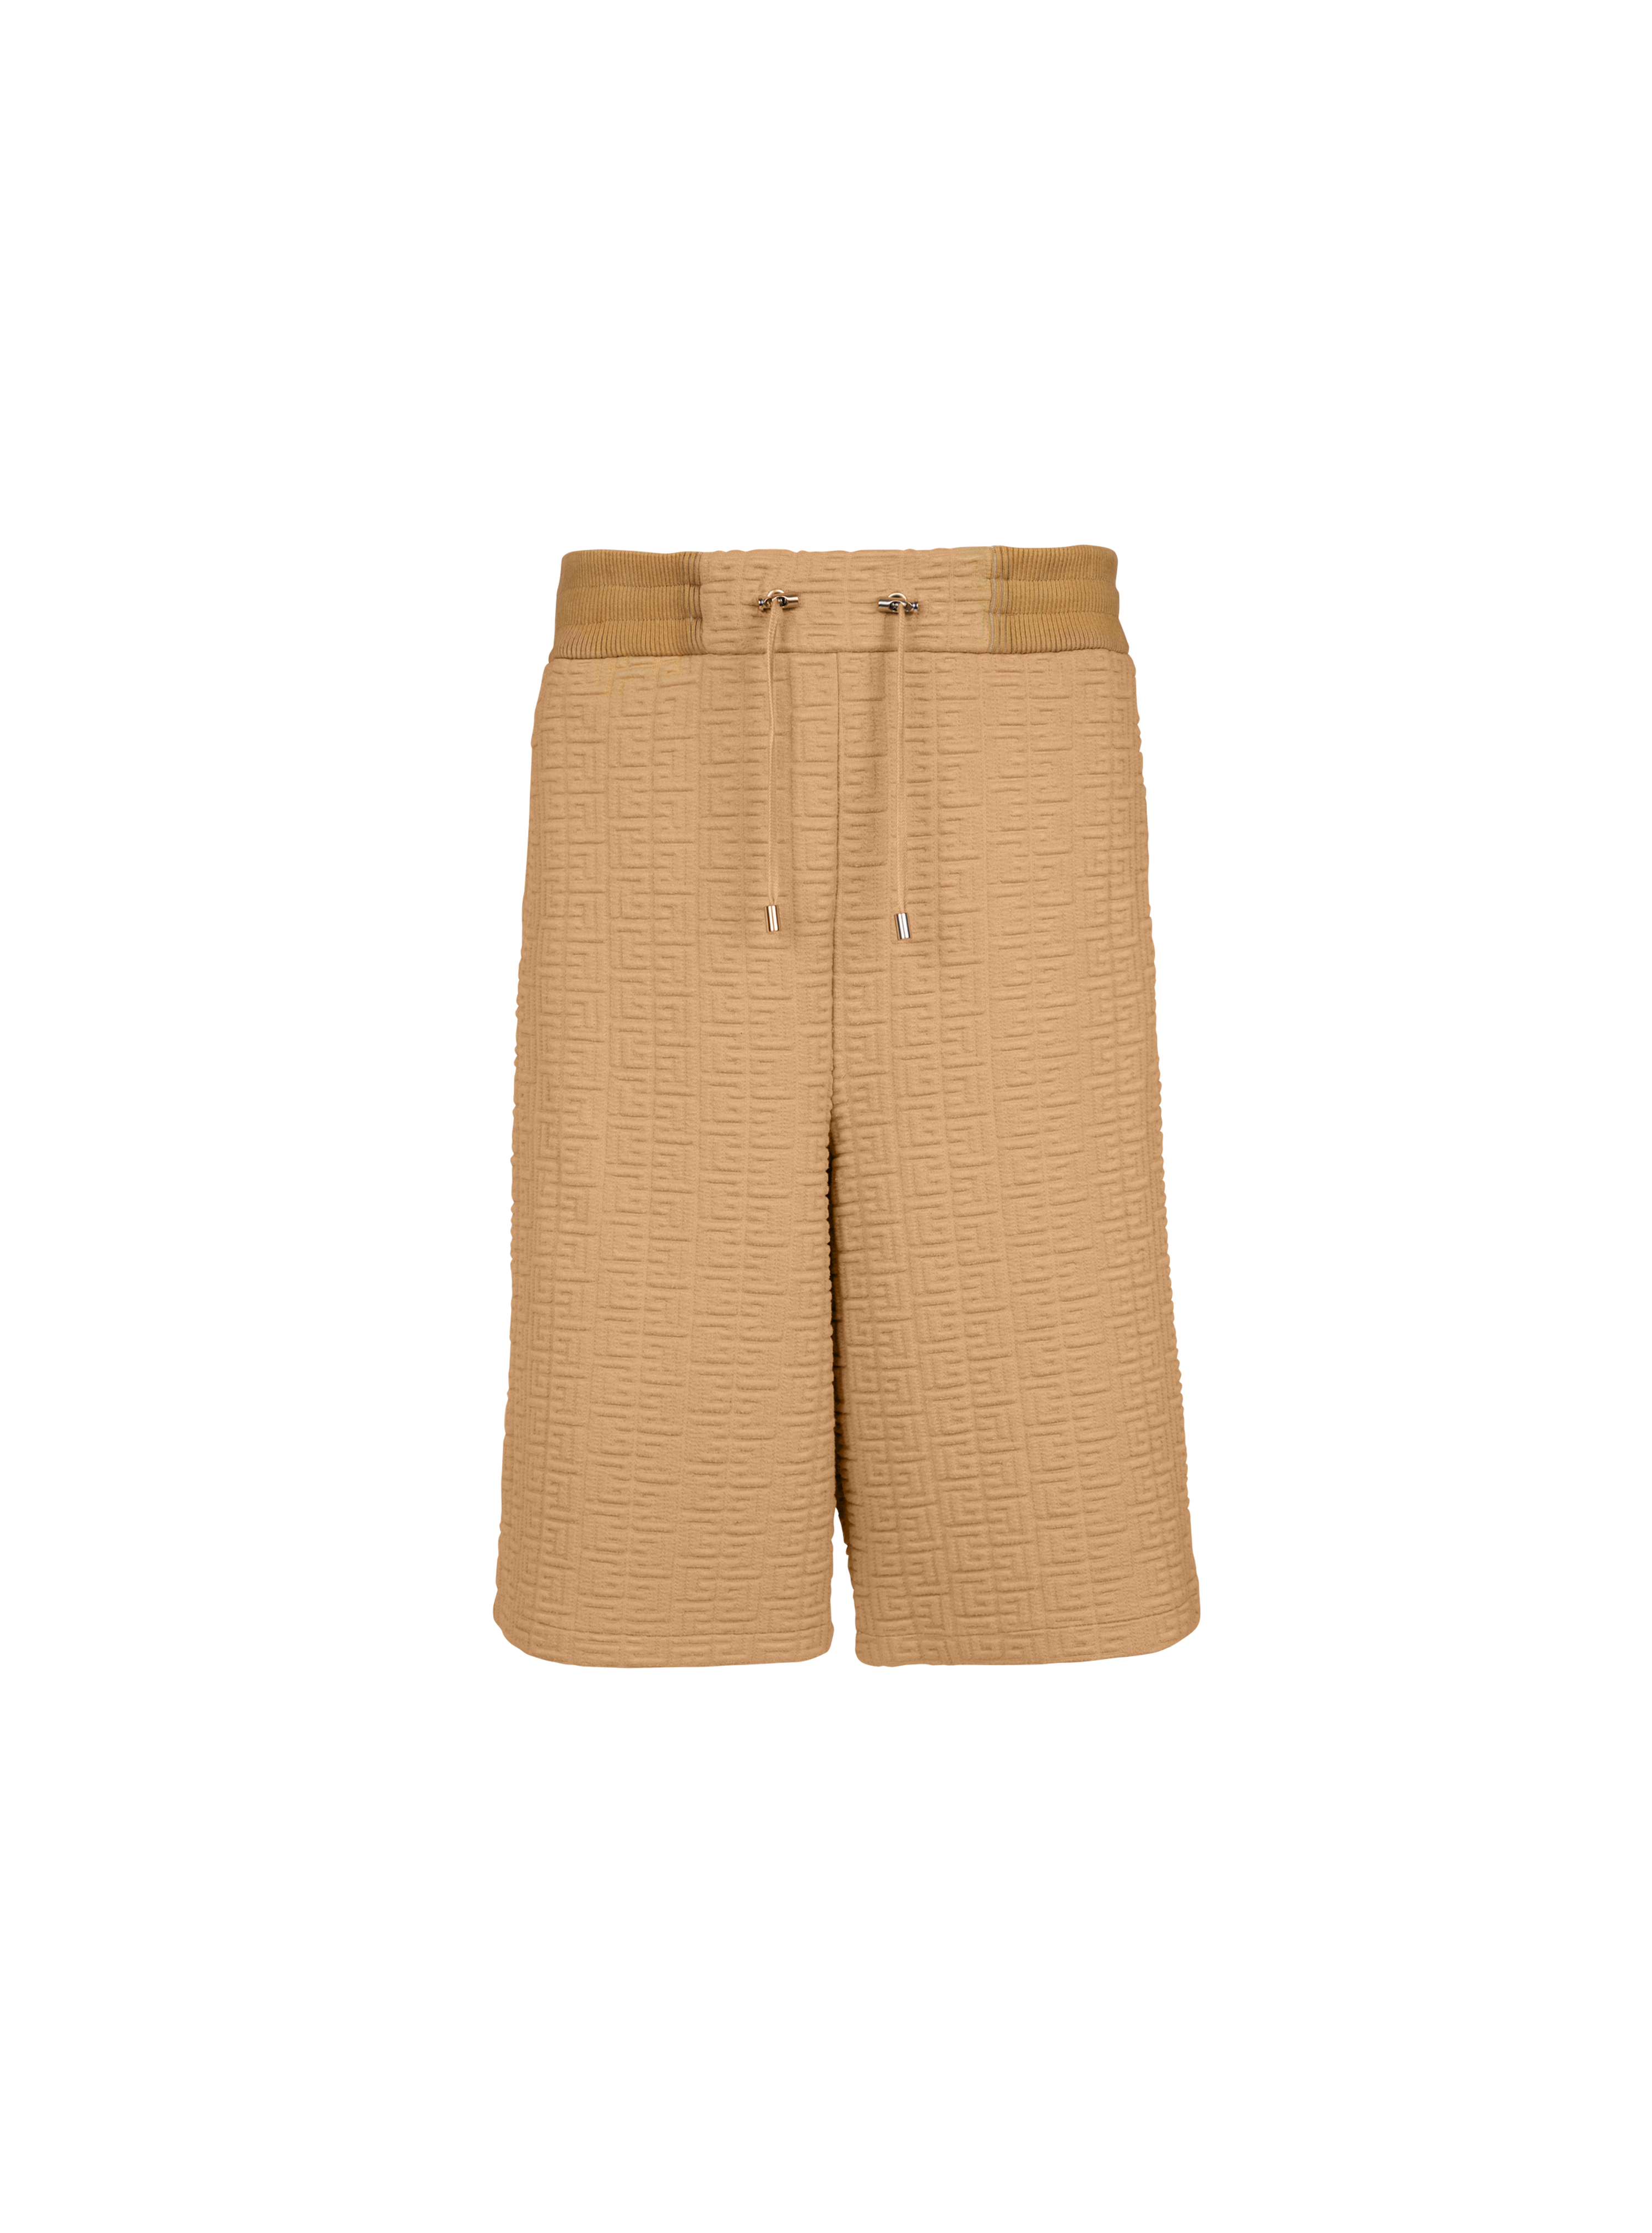 Bermuda shorts with embossed Balmain monogram, brown